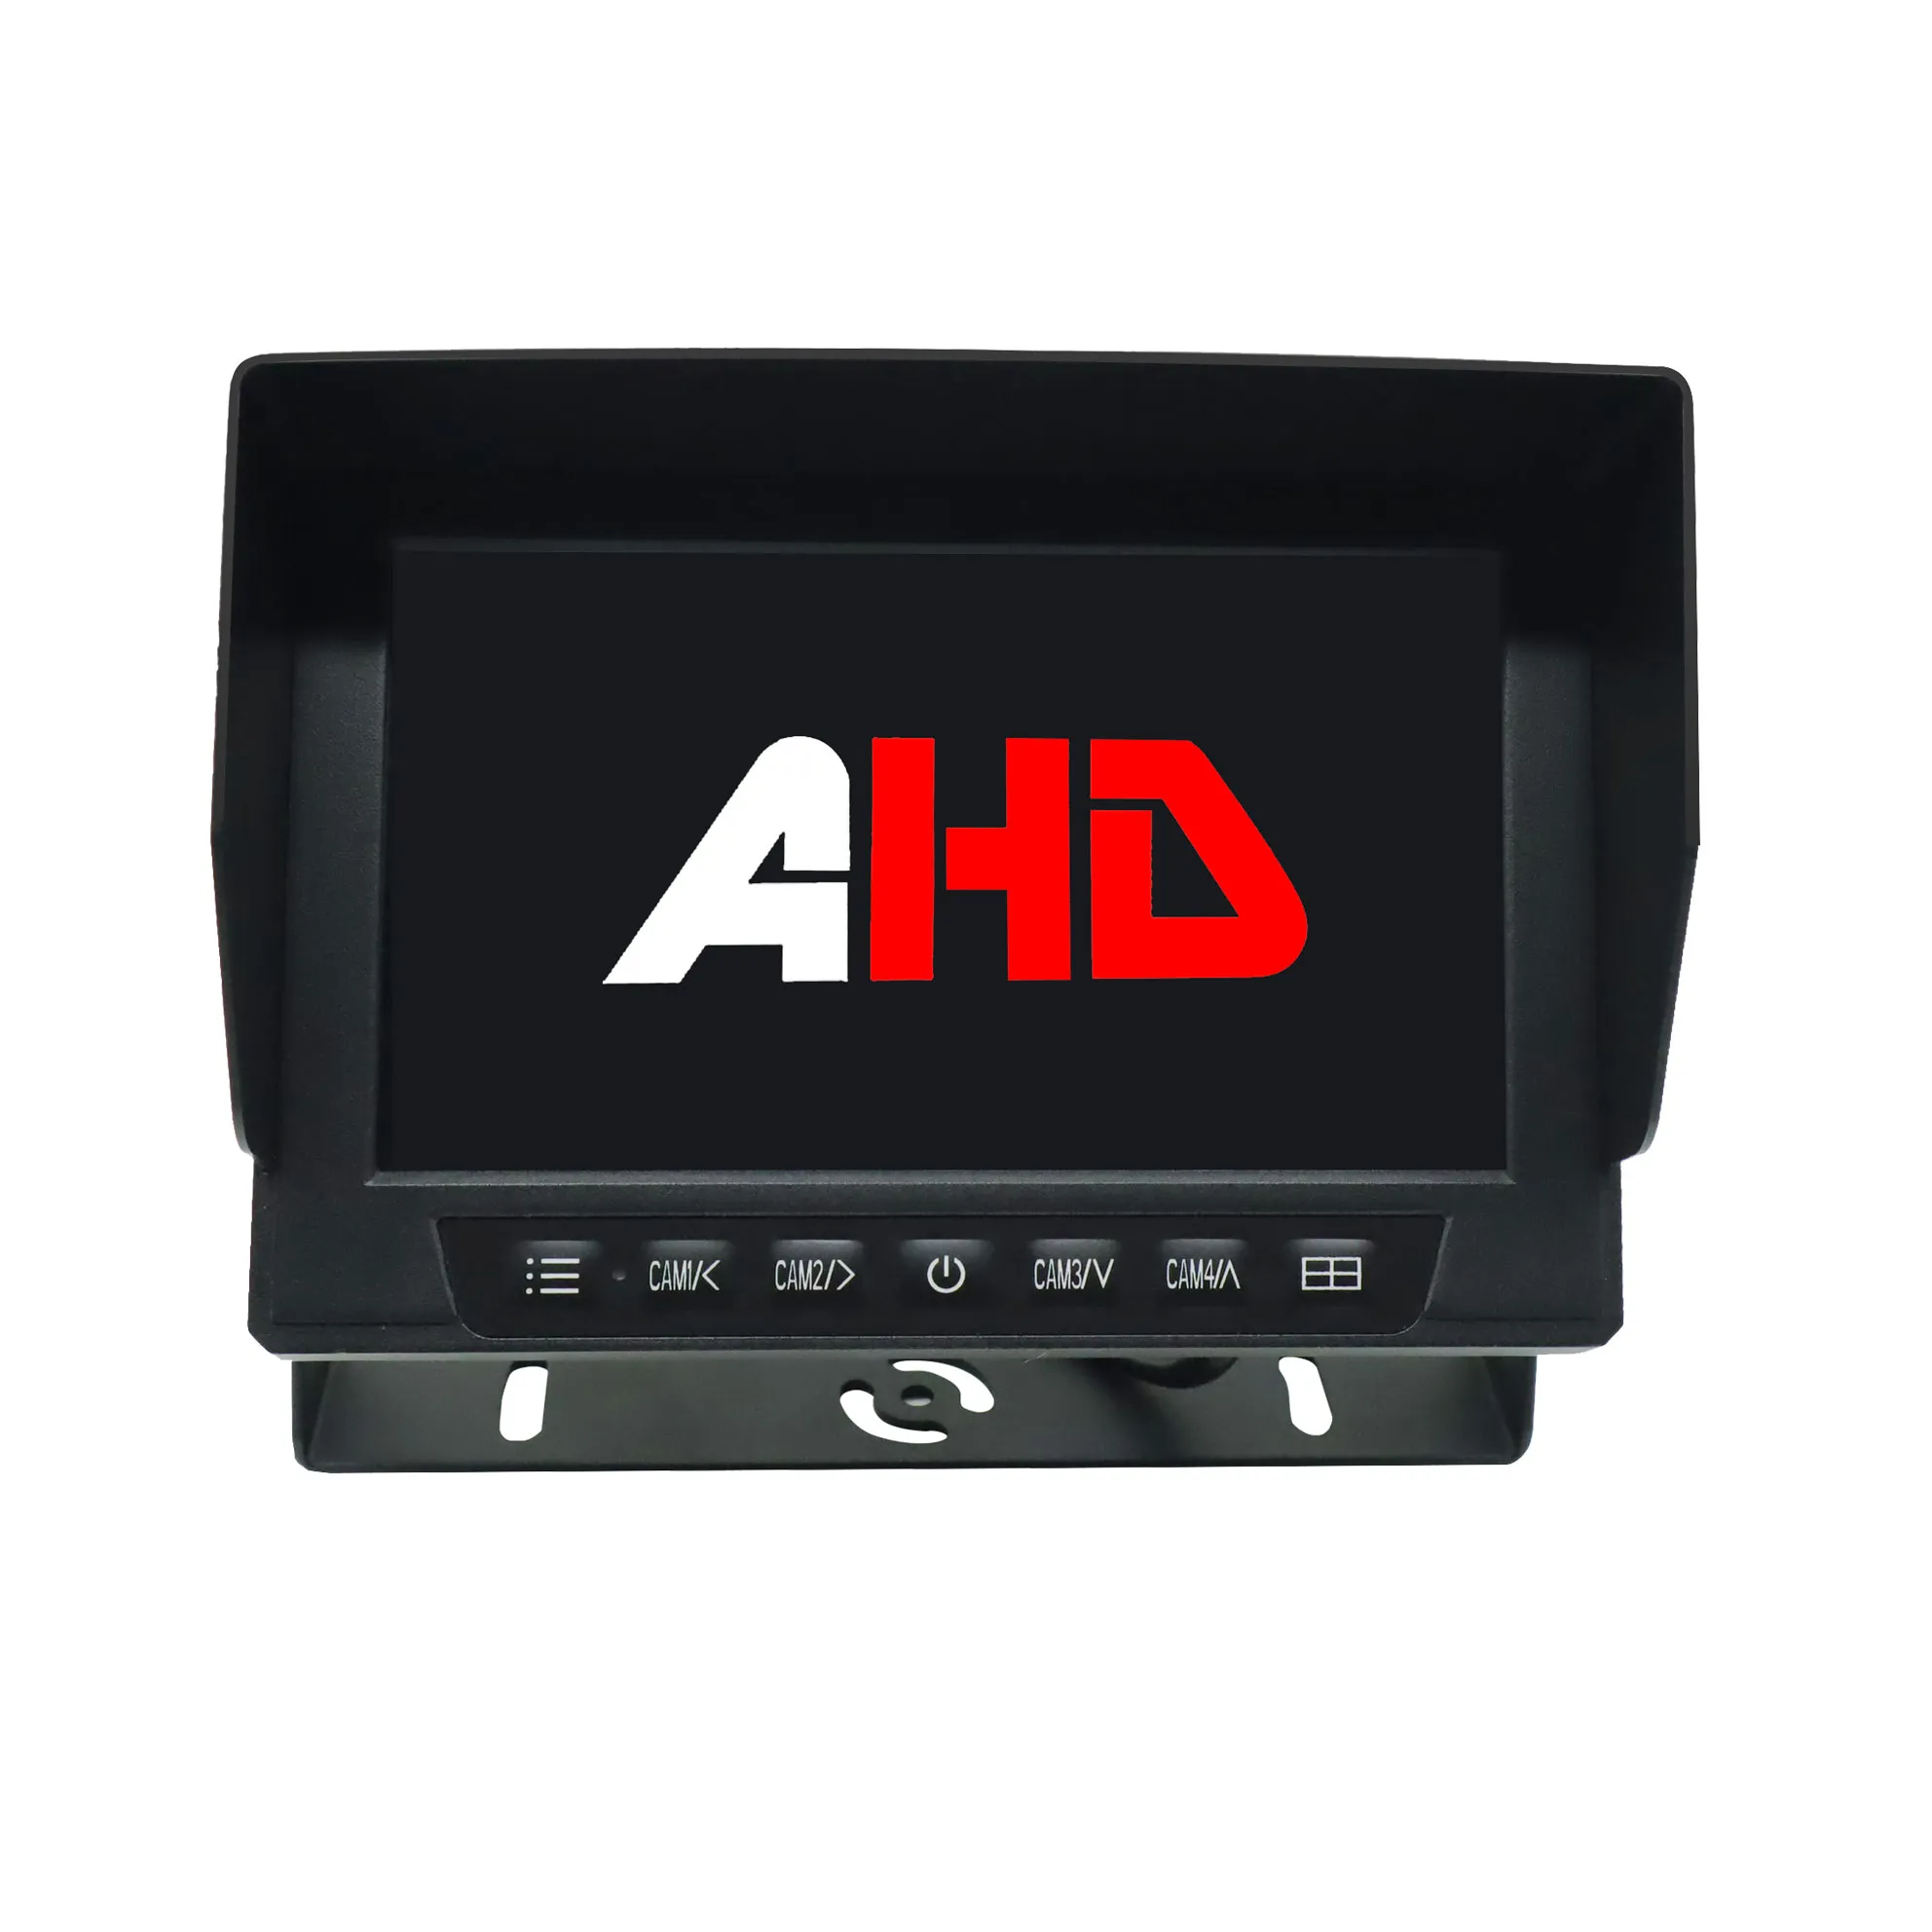 Monitor AHD impermeable para coche de 7 pulgadas